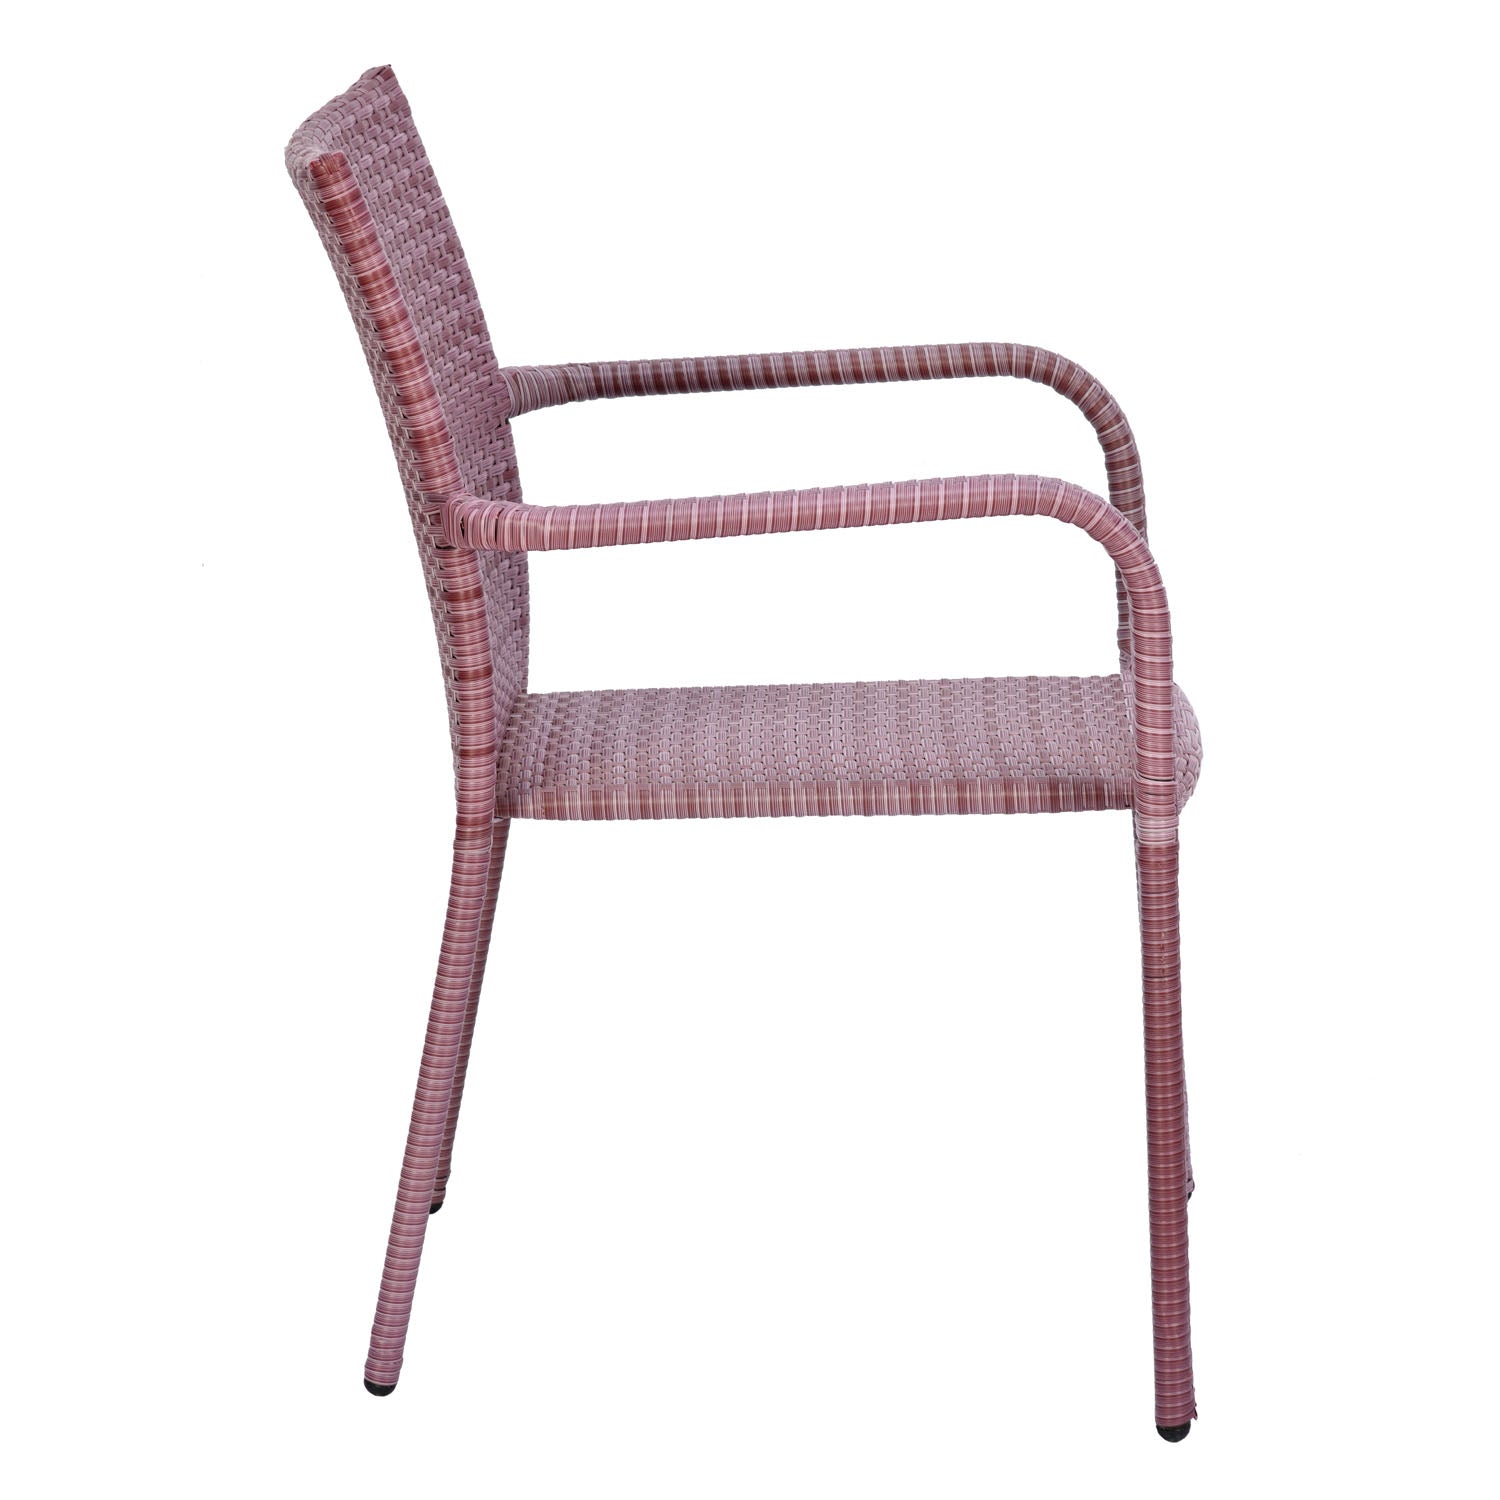 Branson Rattan Garden Chair (Brown)